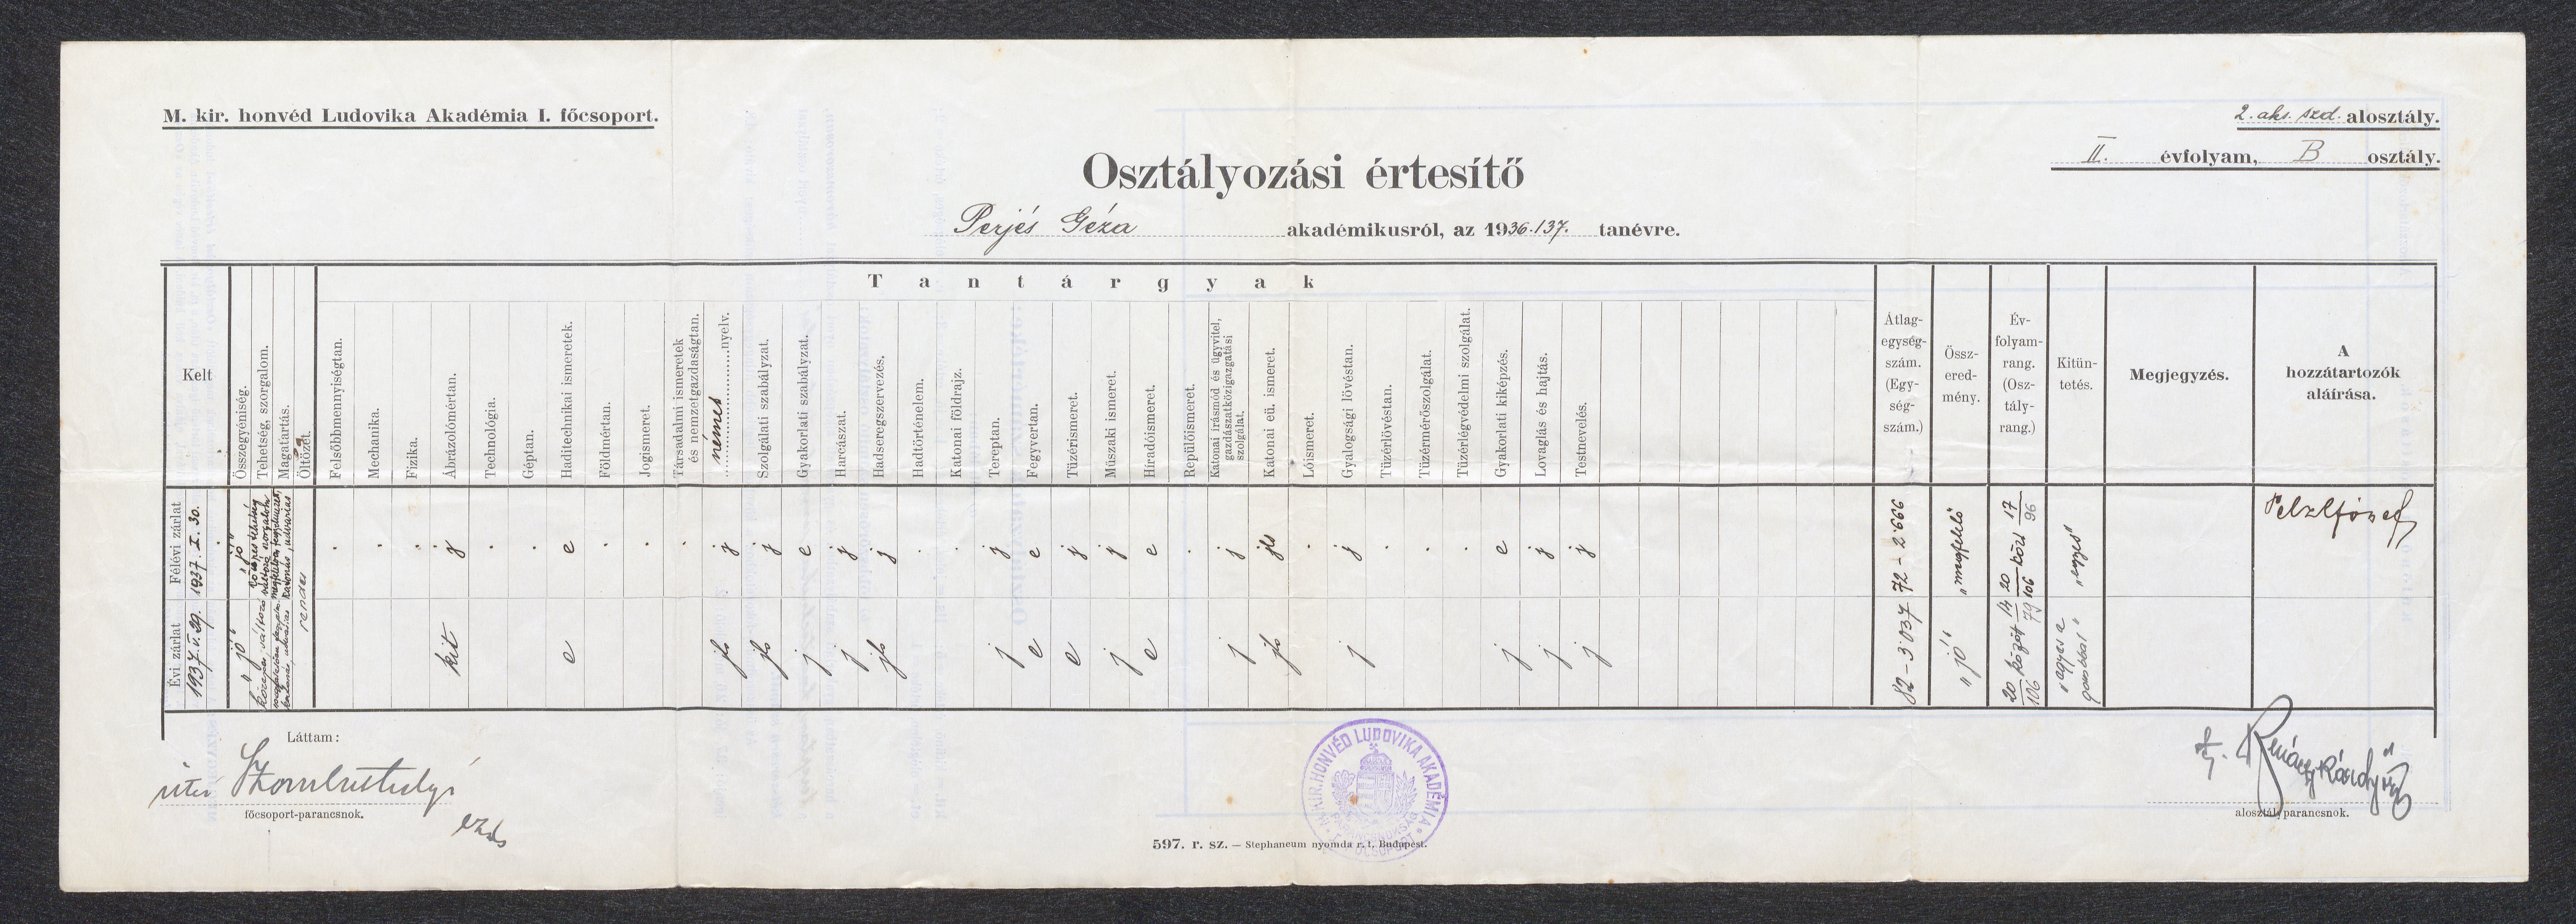 Osztályozási értesító Perjés Géza akadémikusról, az 1936/37. tanévre